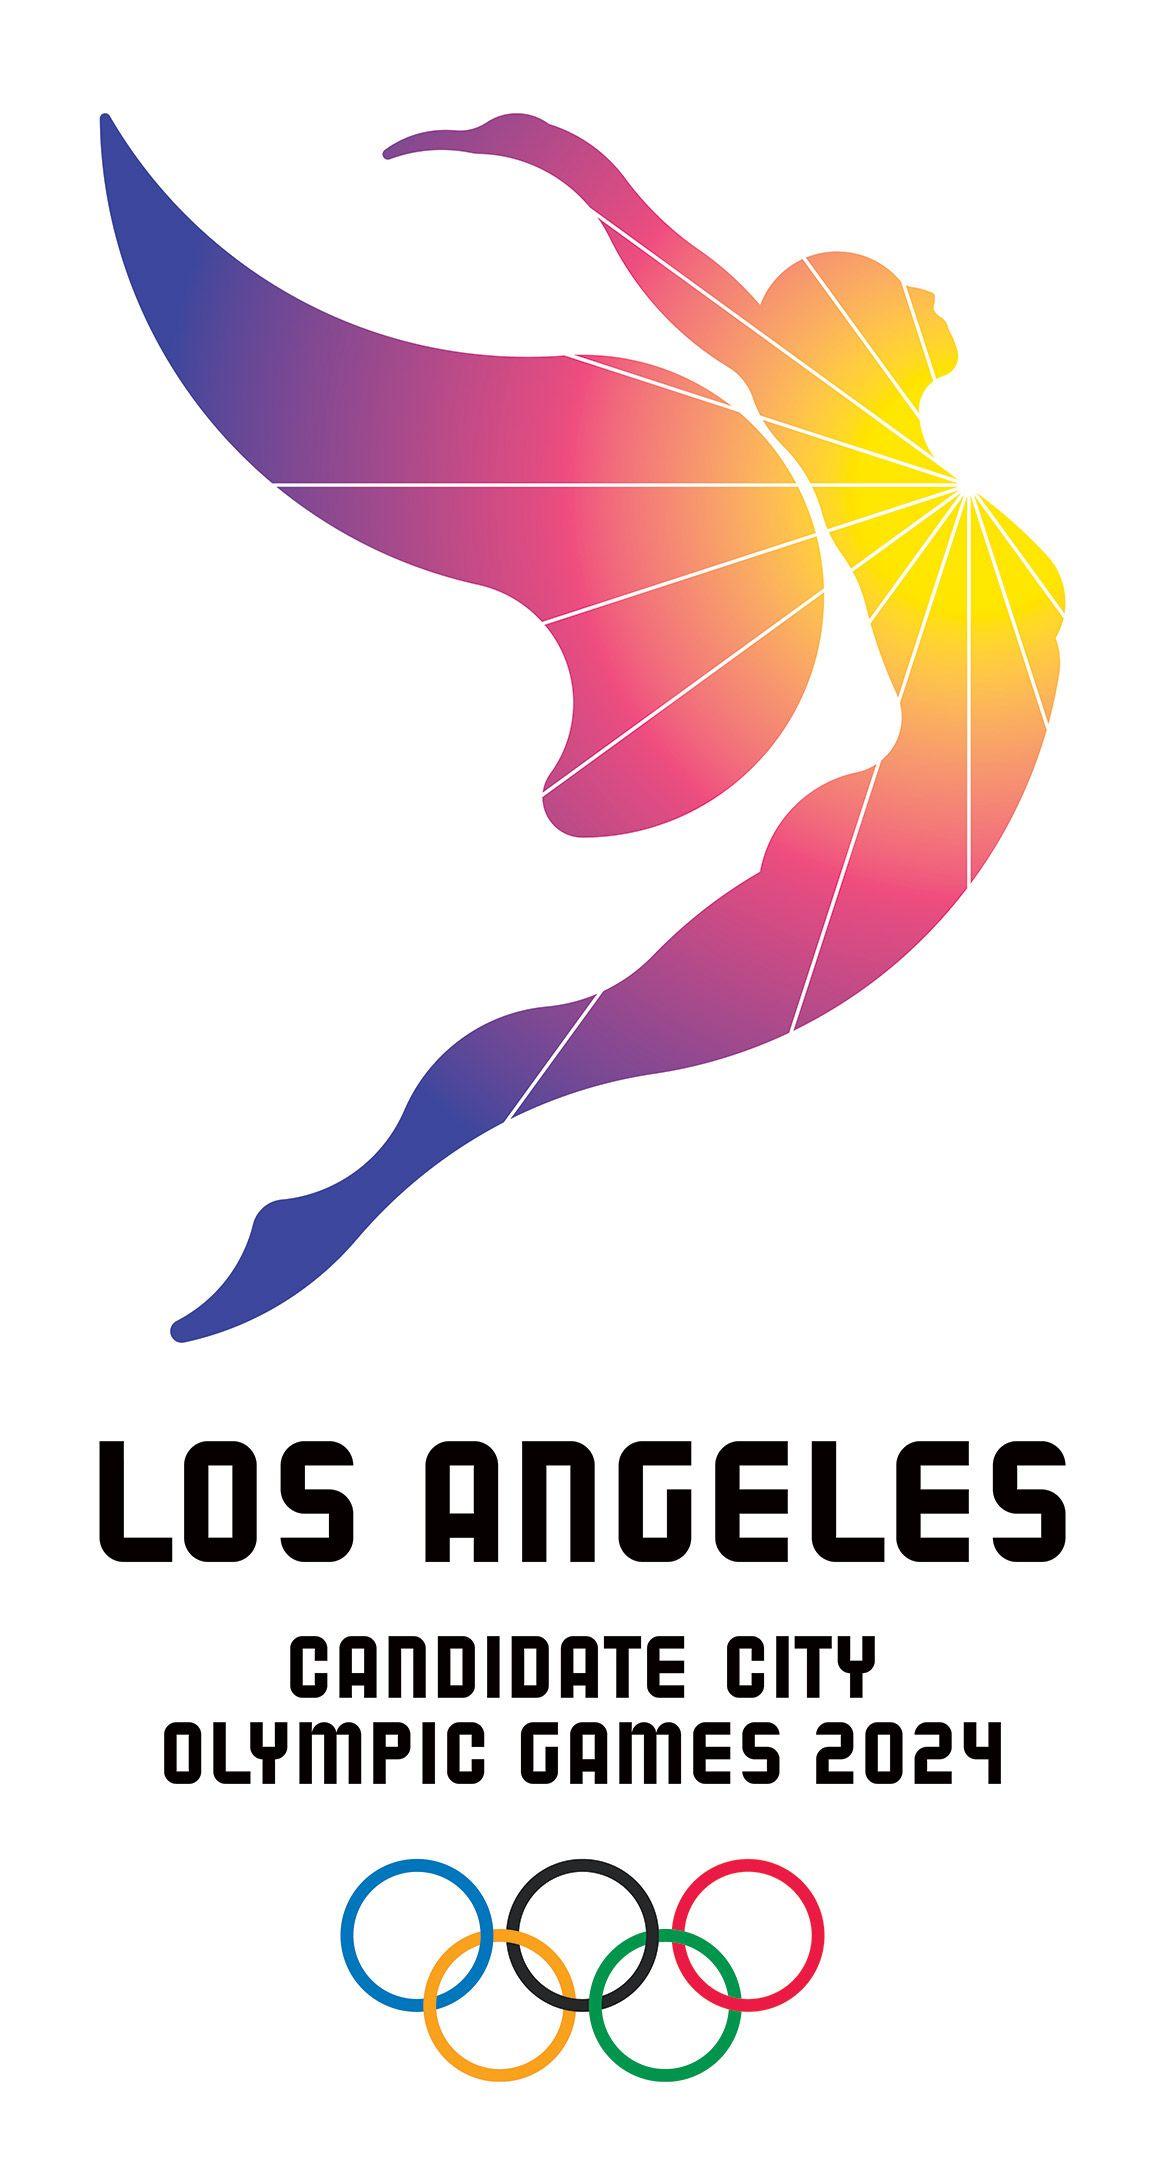 Olimpicos Logo - Los Angeles 2024 logo – Ciudad candidata a los Juegos Olímpicos ...